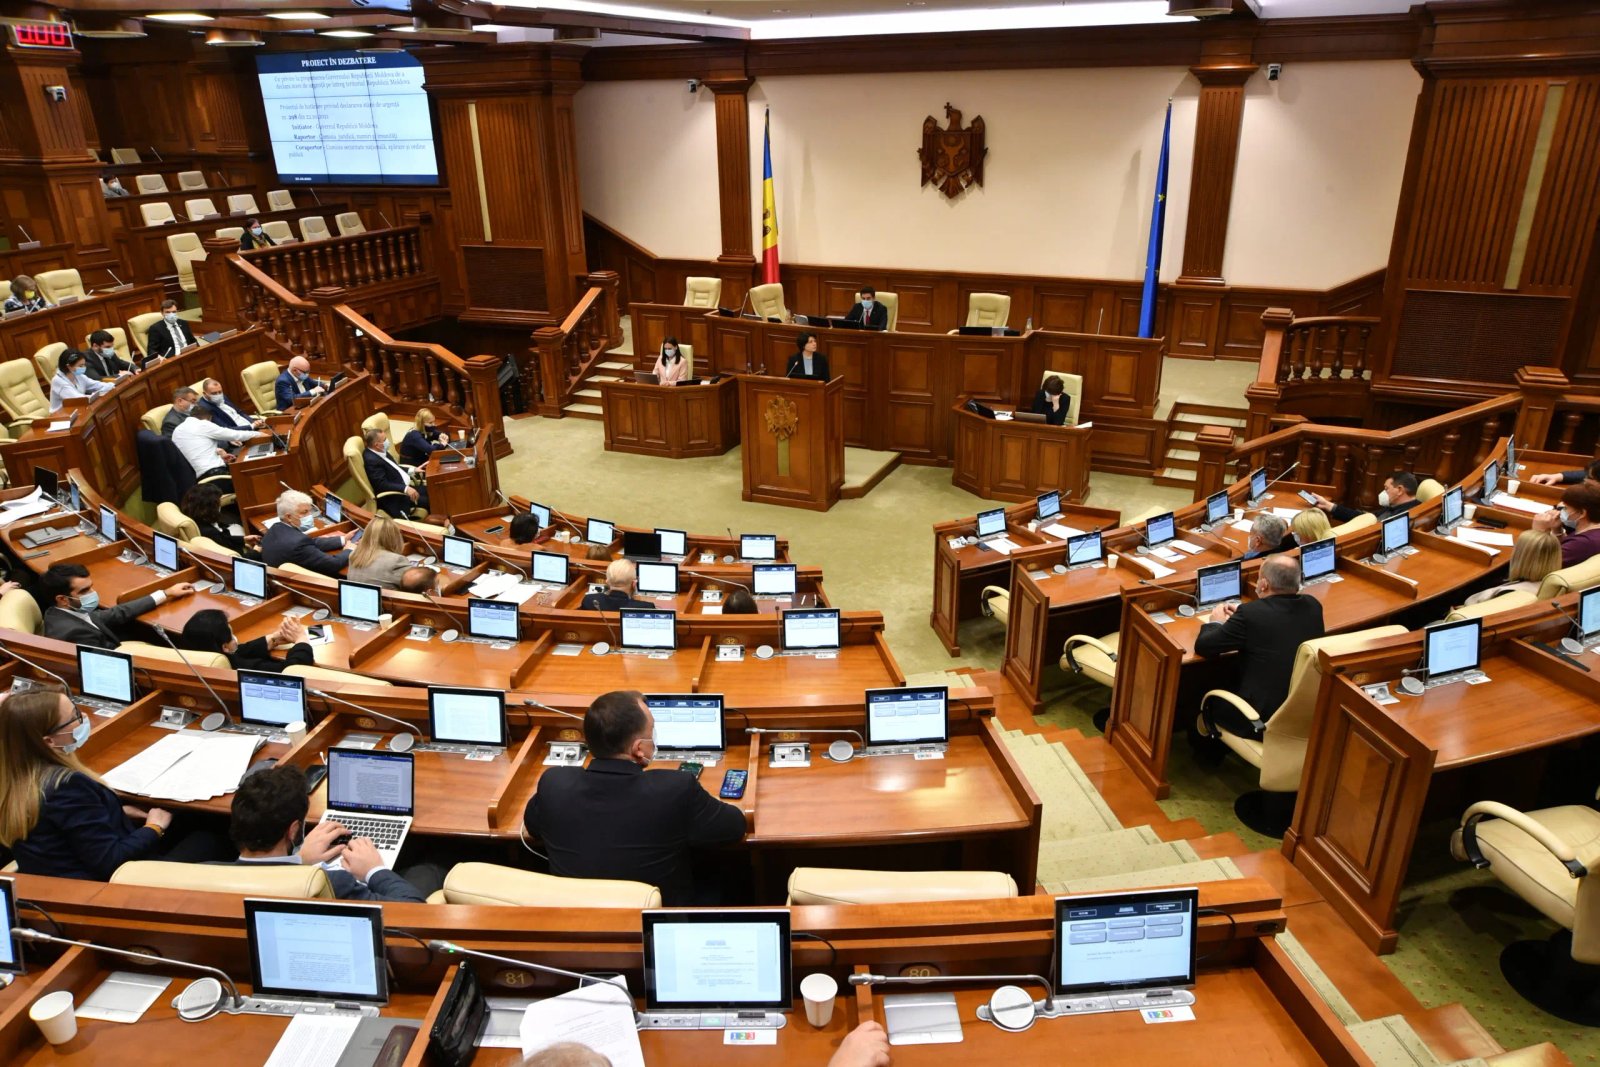 Ще на 60 днів: Молдова продовжила надзвичайний стан